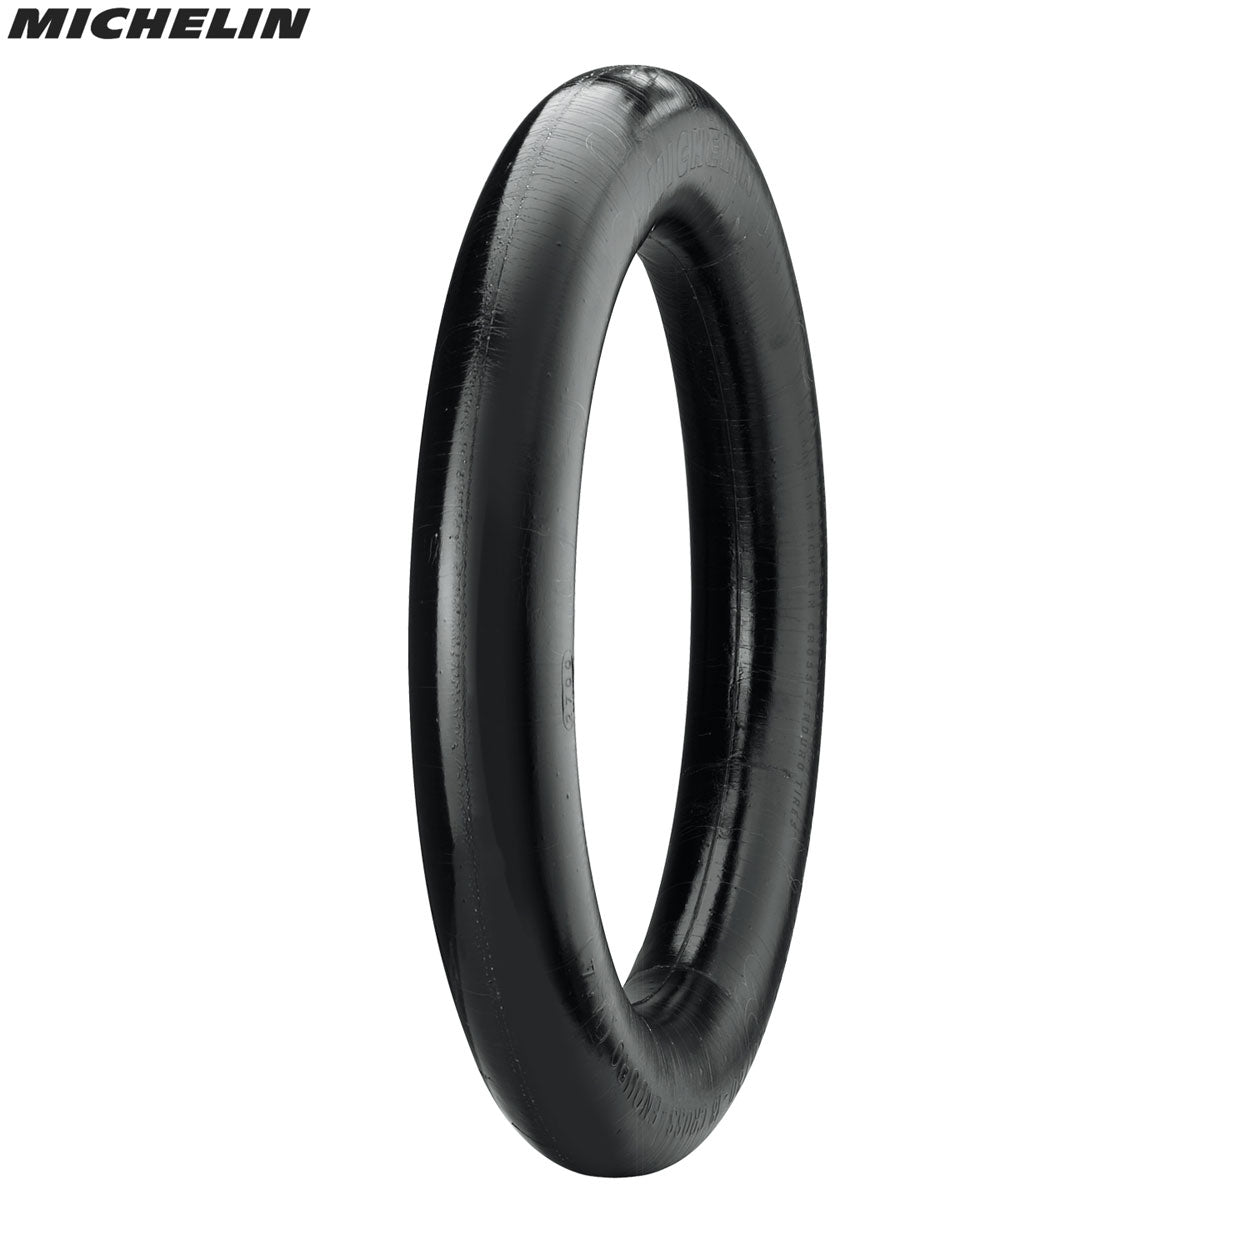 Michelin Bib Mousse 80/100-21 + 90/90-21 (M15)